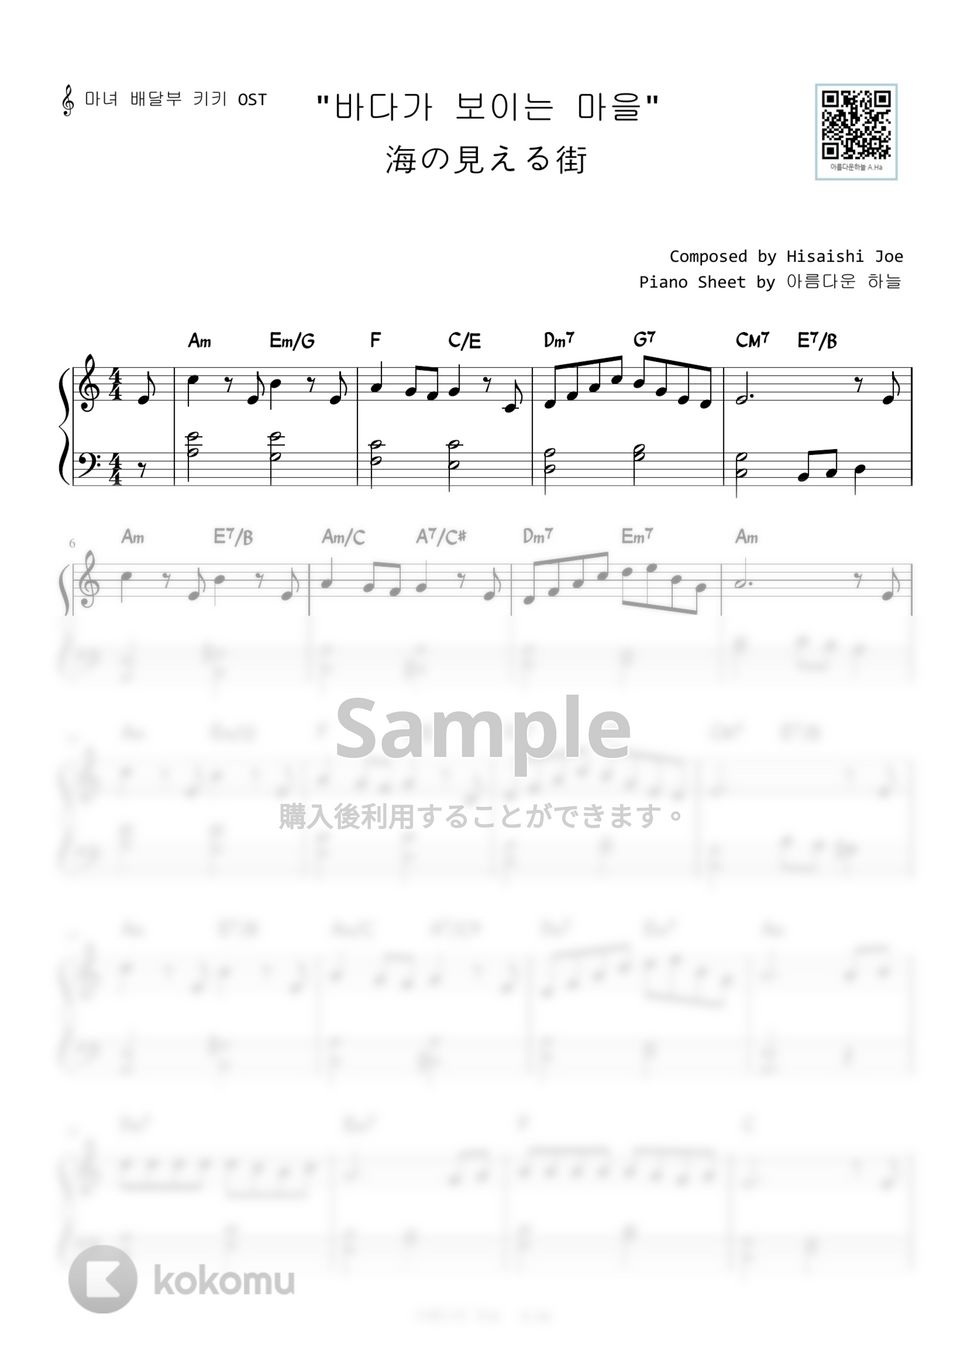 魔女の宅急便 - 海の見える街 (Level 1 - Easy Version) by A.Ha